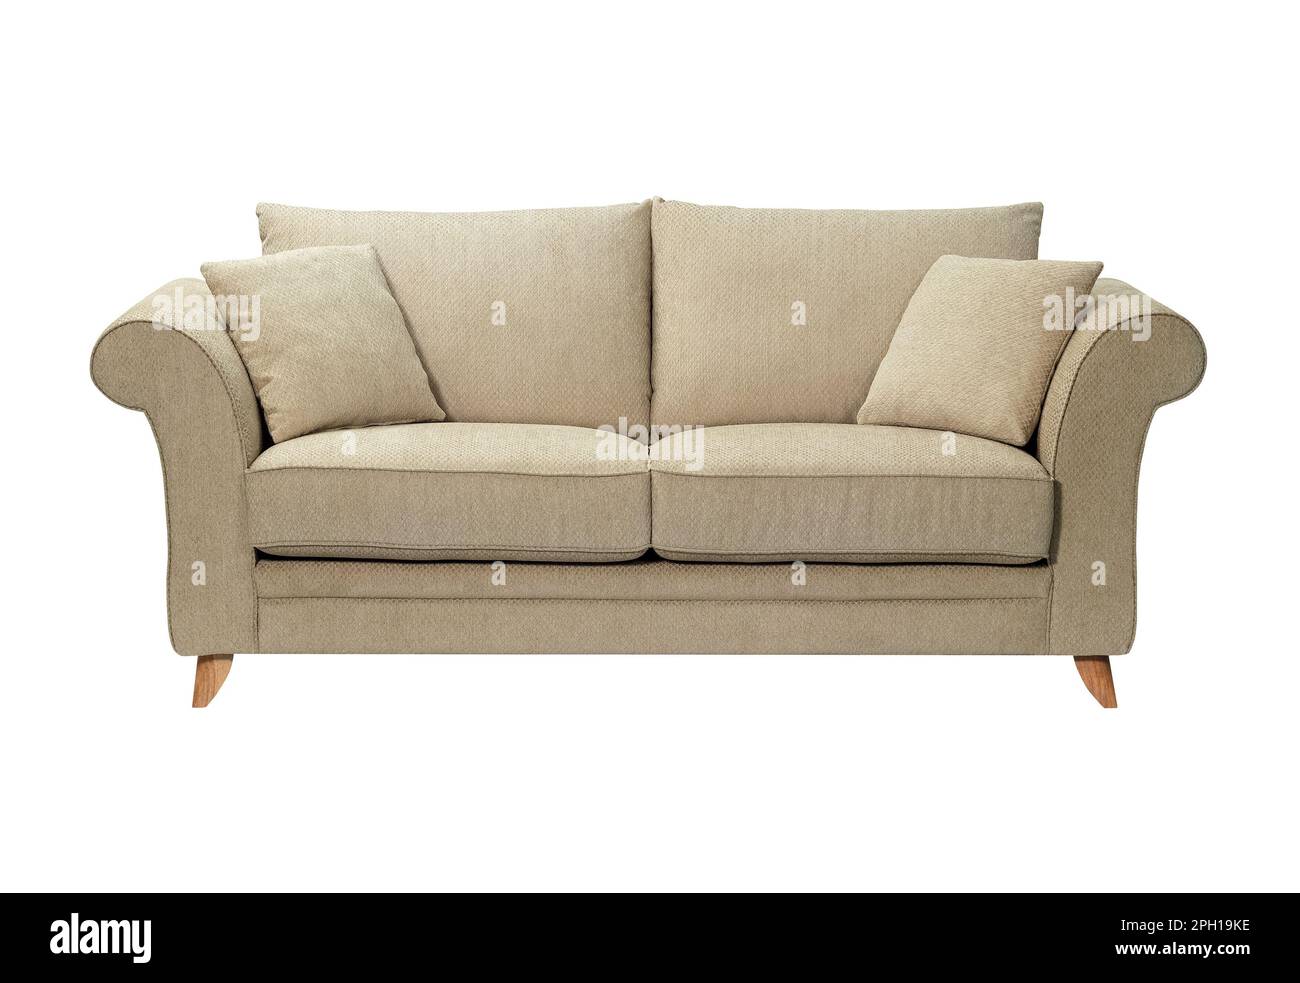 Confortable et élégant canapé en lin isolé sur fond blanc Photo Stock -  Alamy